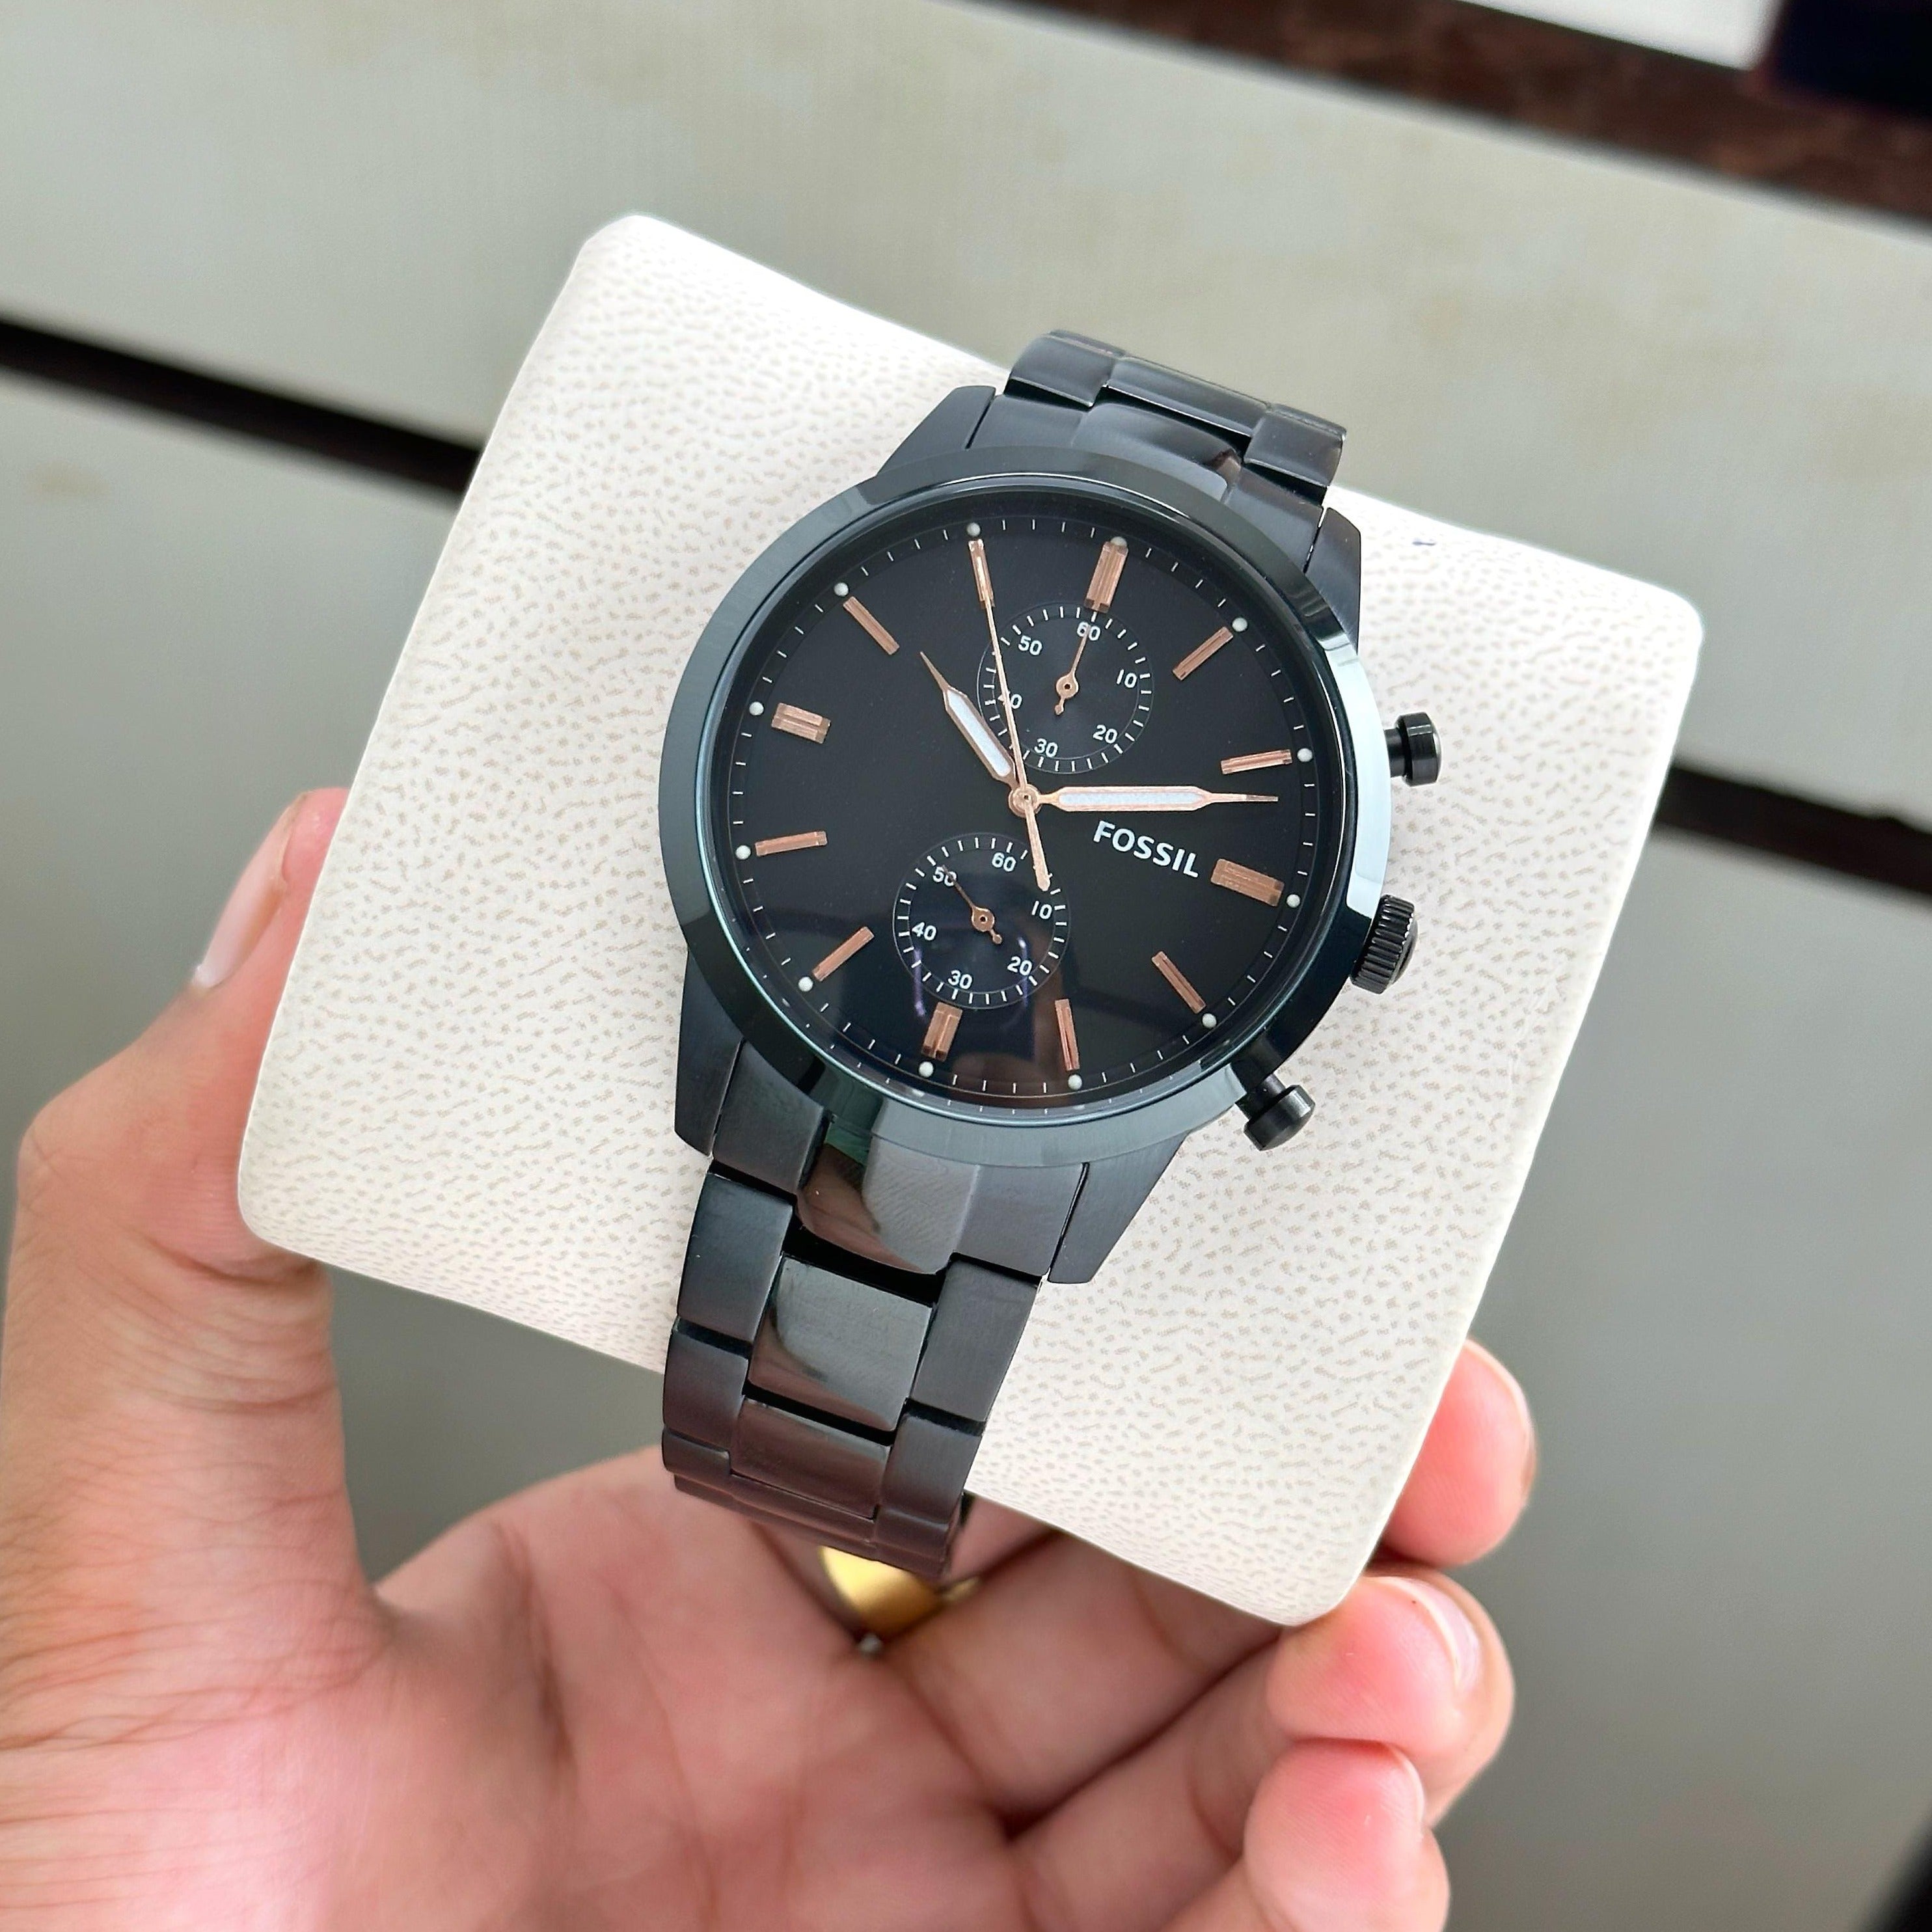 Fsl premium luxury mens watch